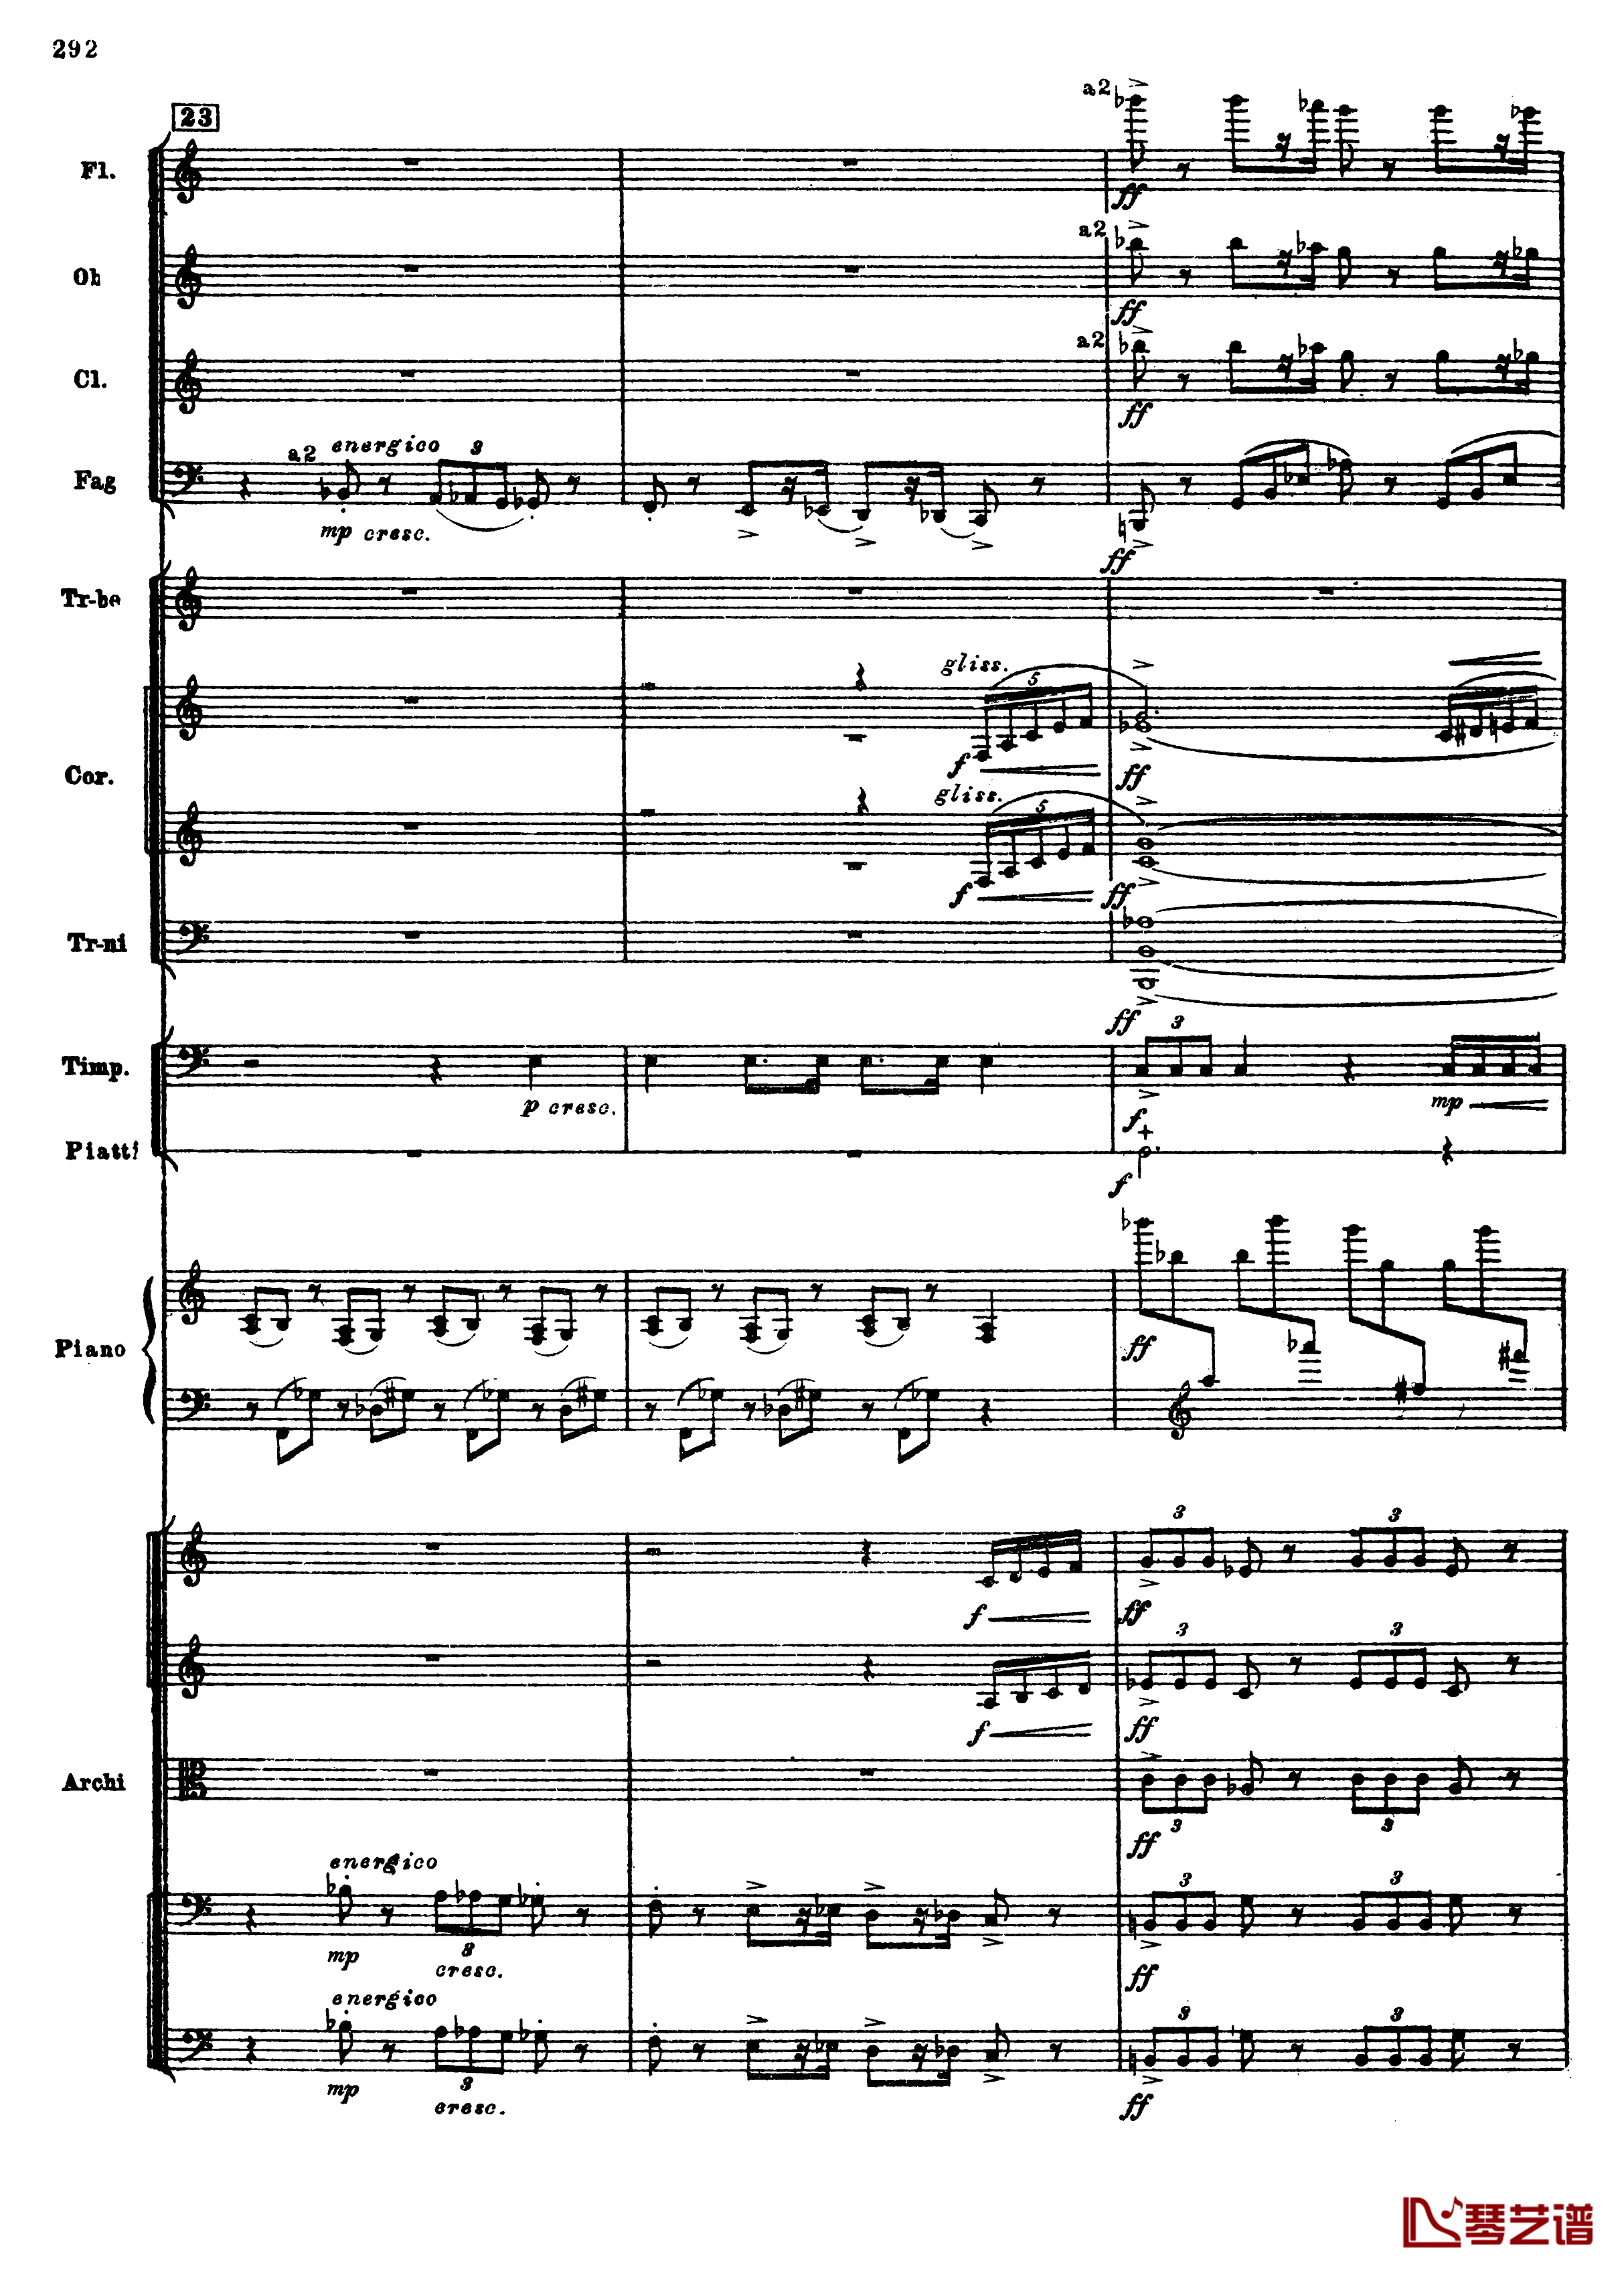 普罗科菲耶夫第三钢琴协奏曲钢琴谱-总谱-普罗科非耶夫24